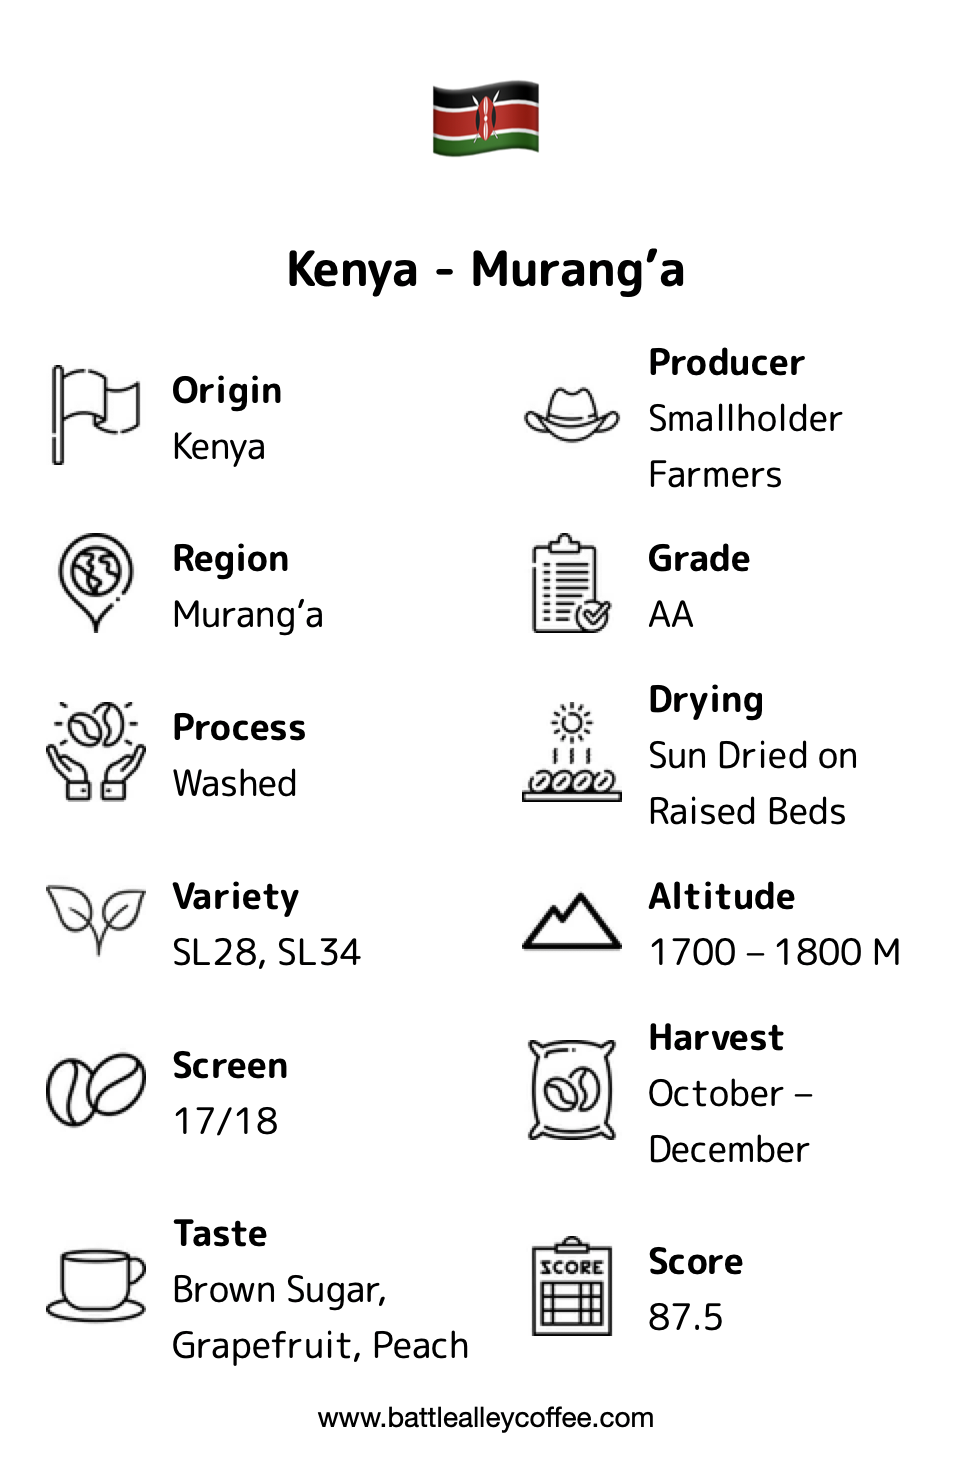 Kenya Murang'a description